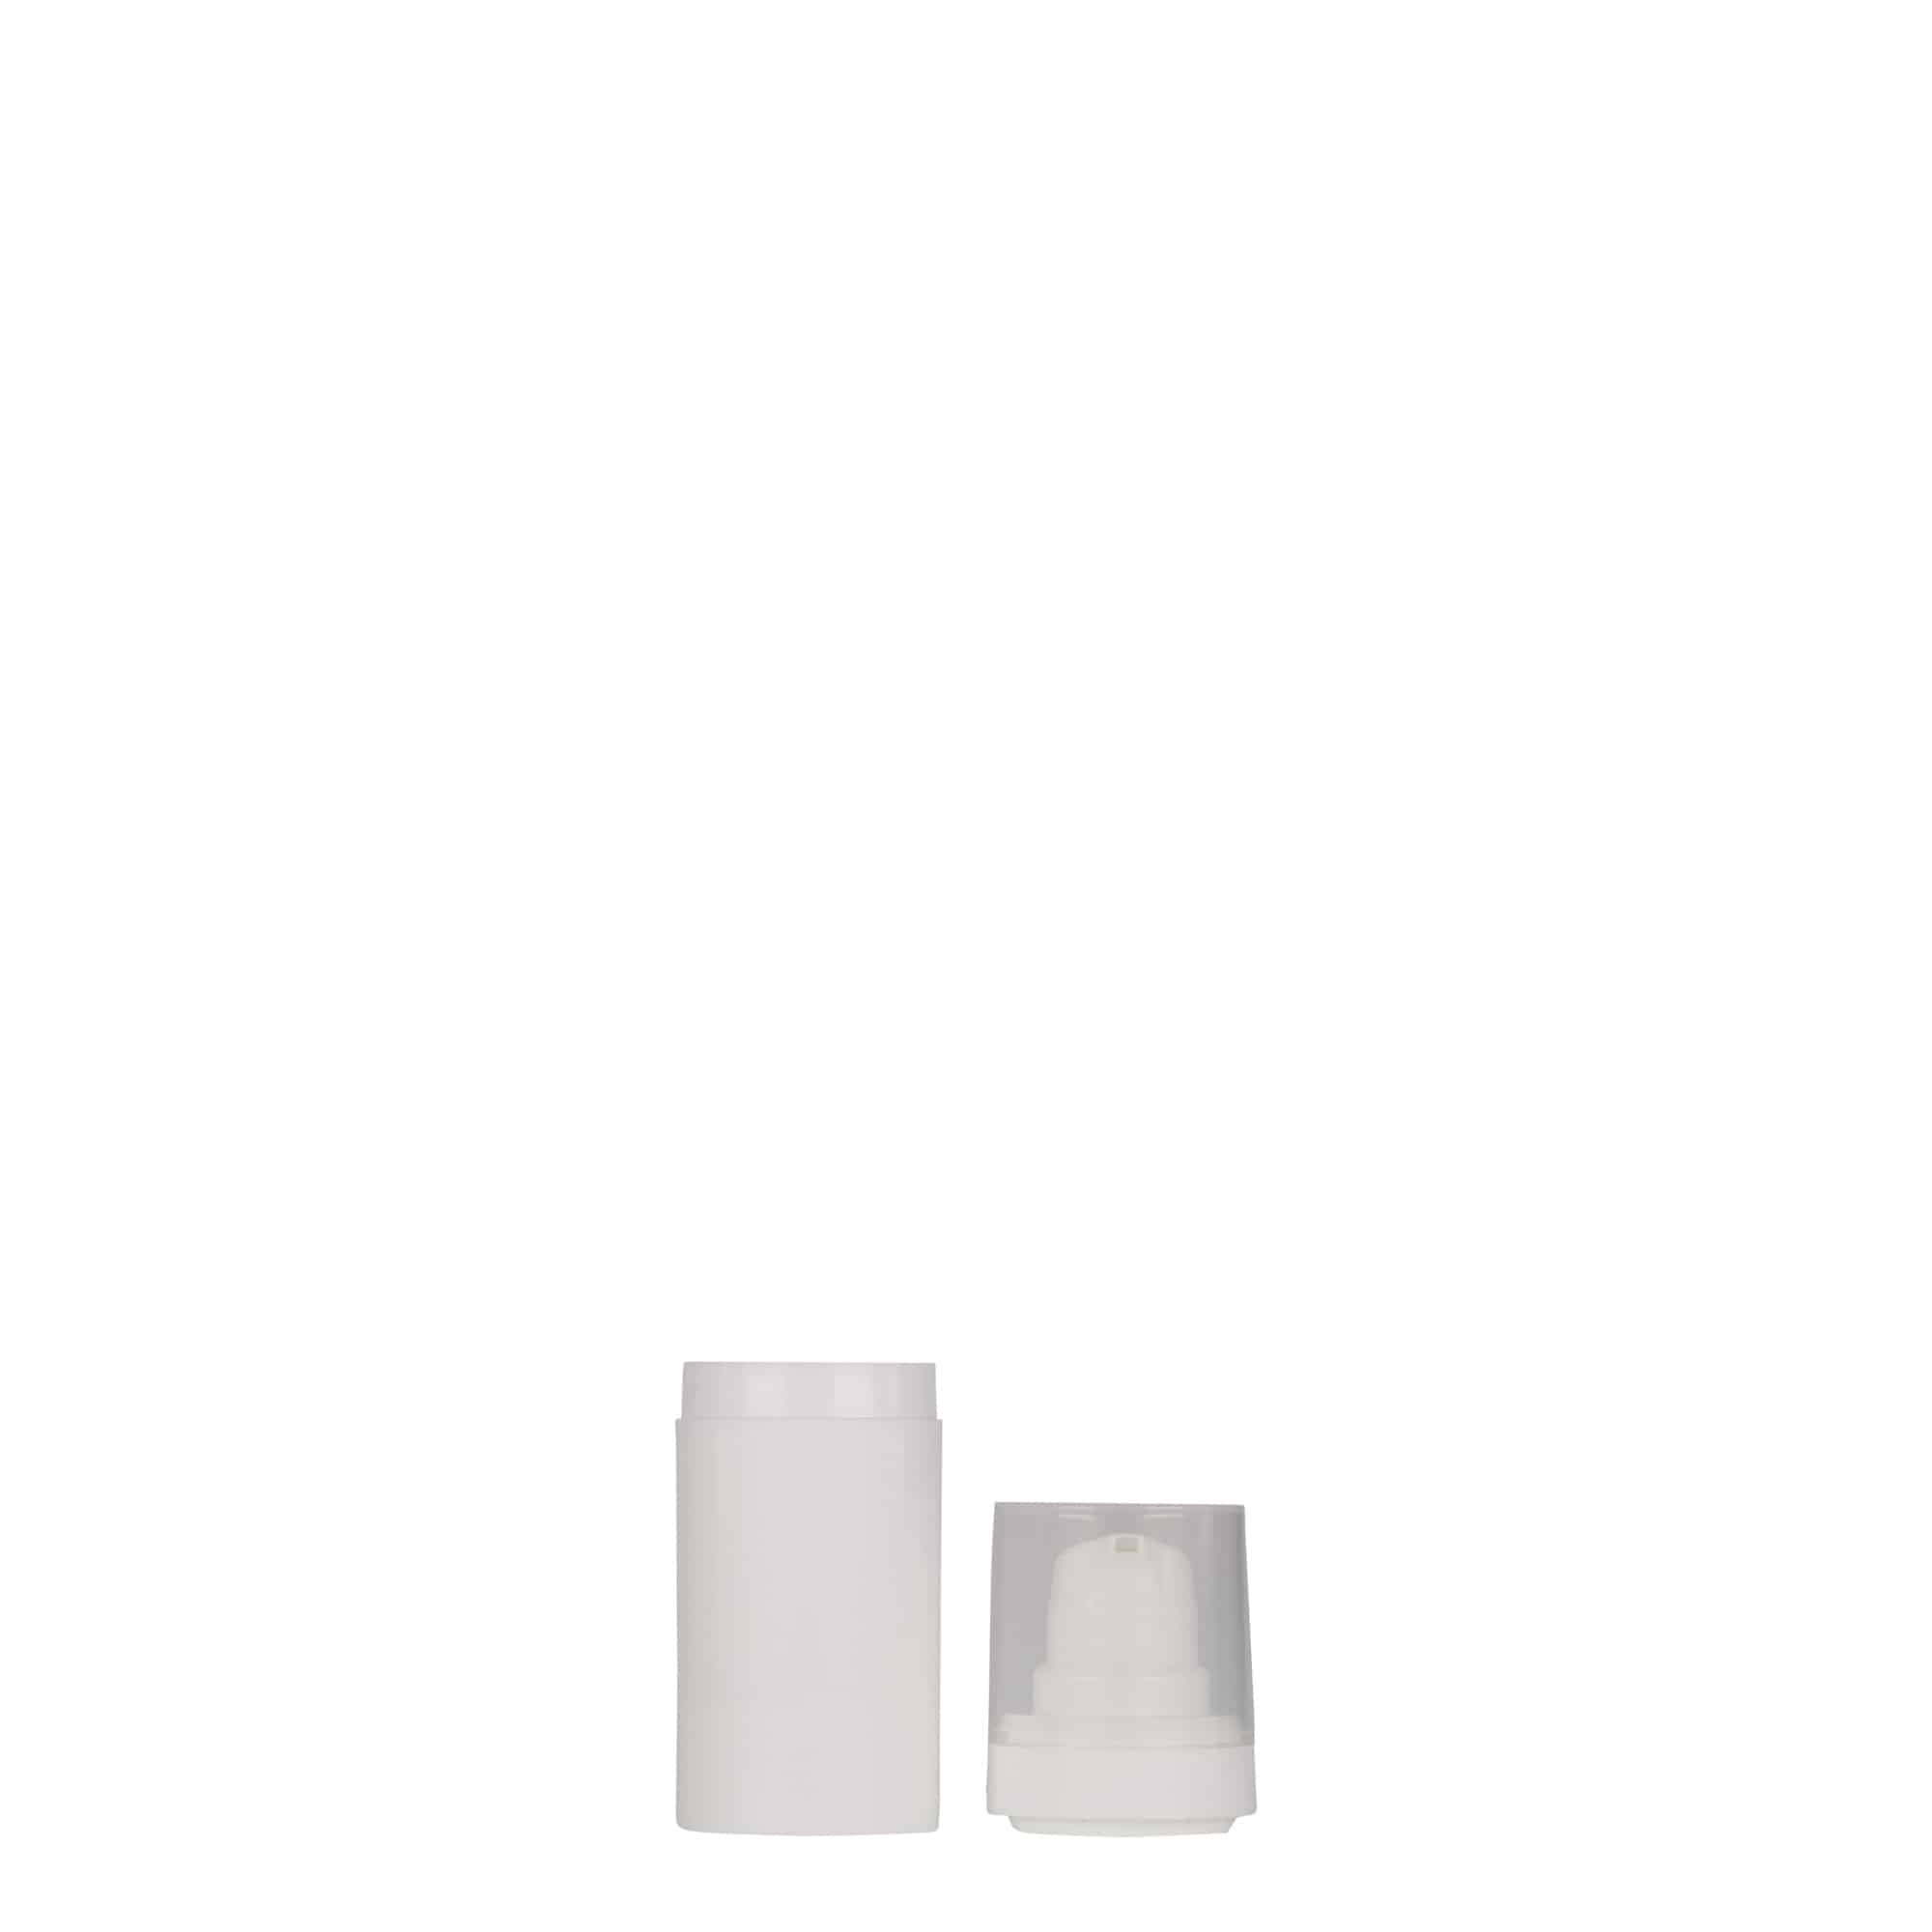 15 ml dozownik airless 'Micro', tworzywo sztuczne PP, kolor biały